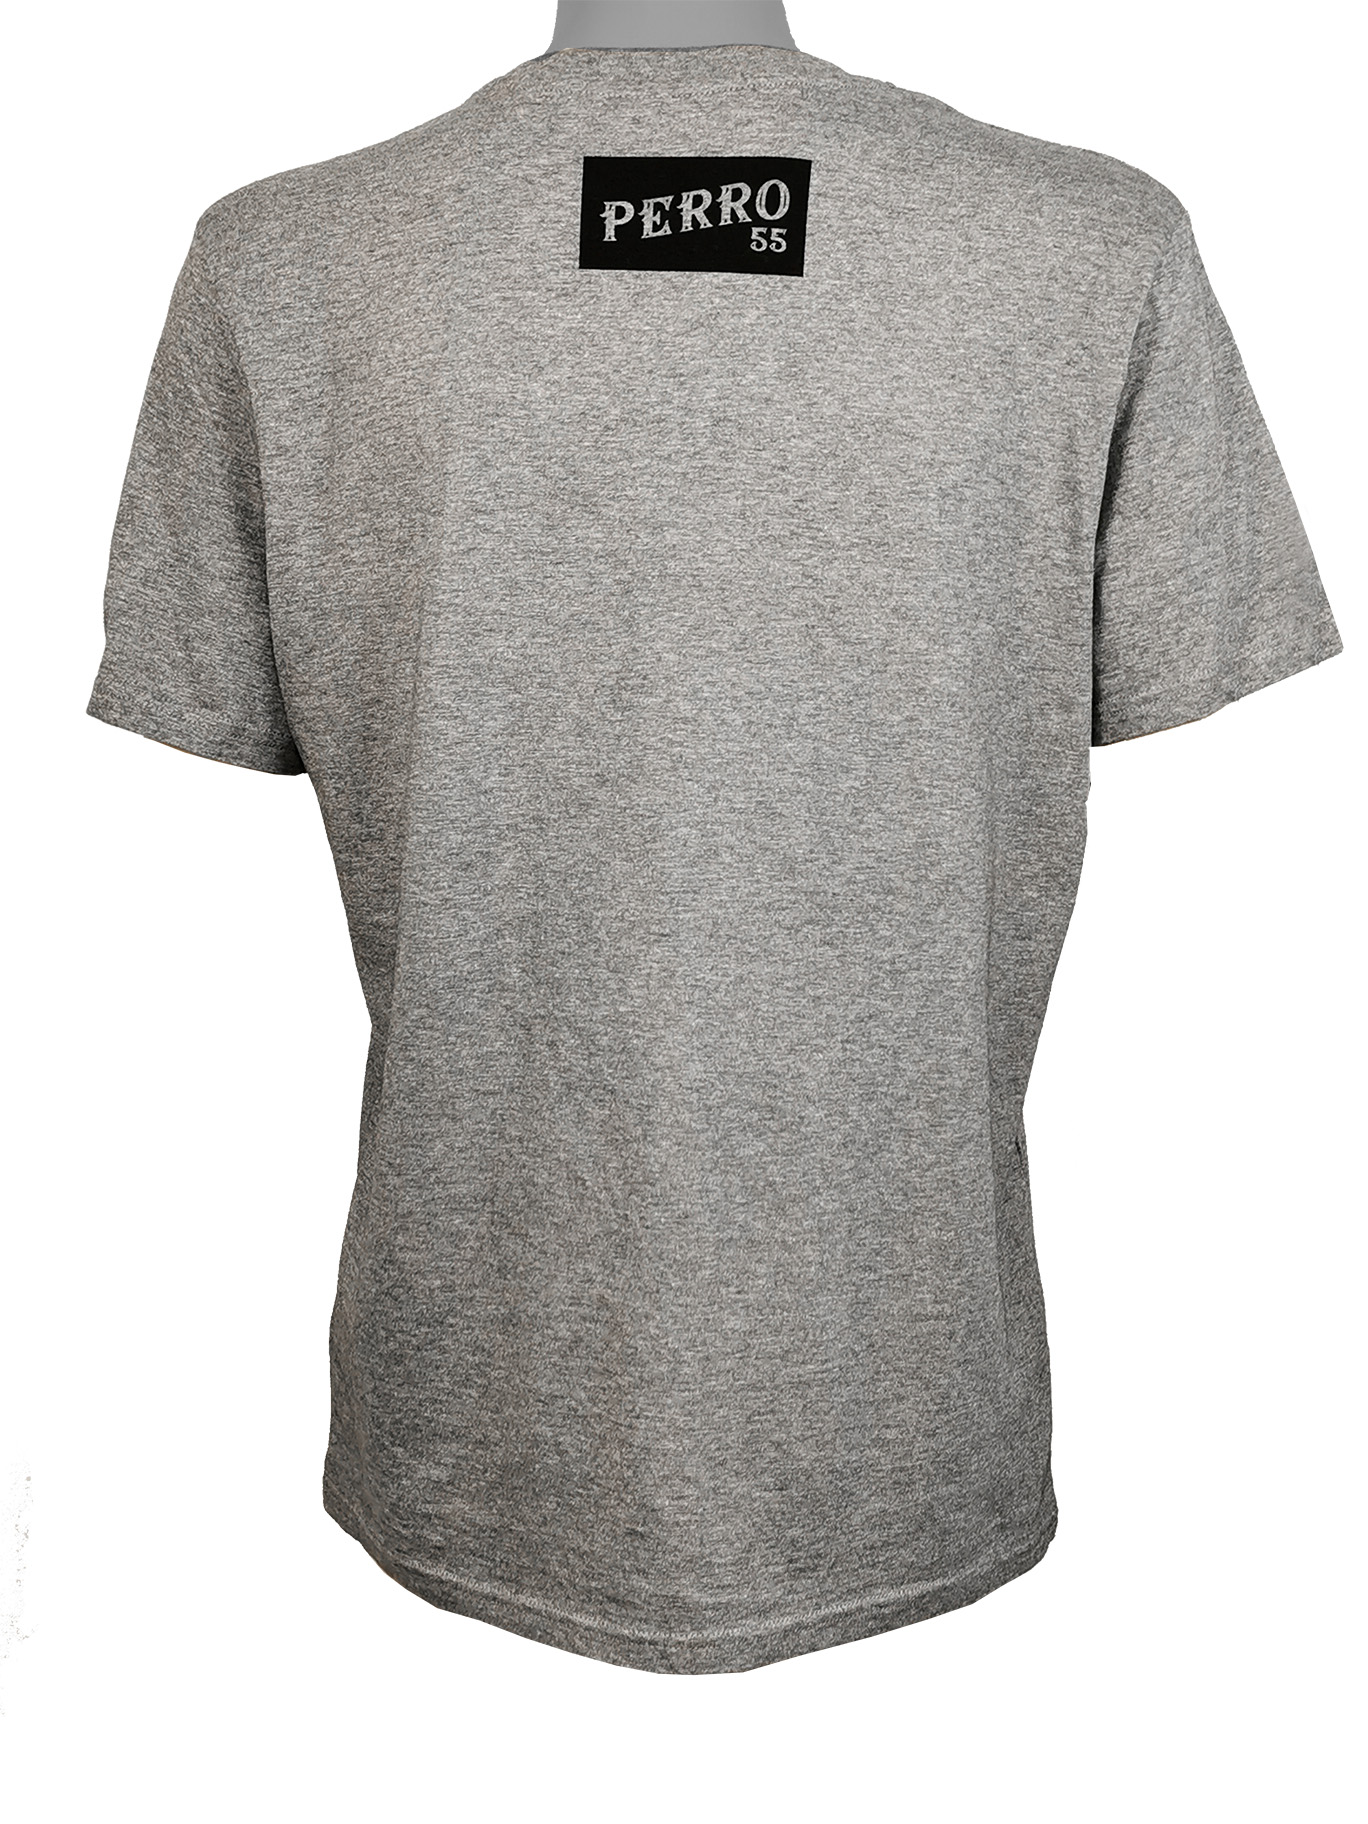 PERRO 55 Unisex Shirt Grau